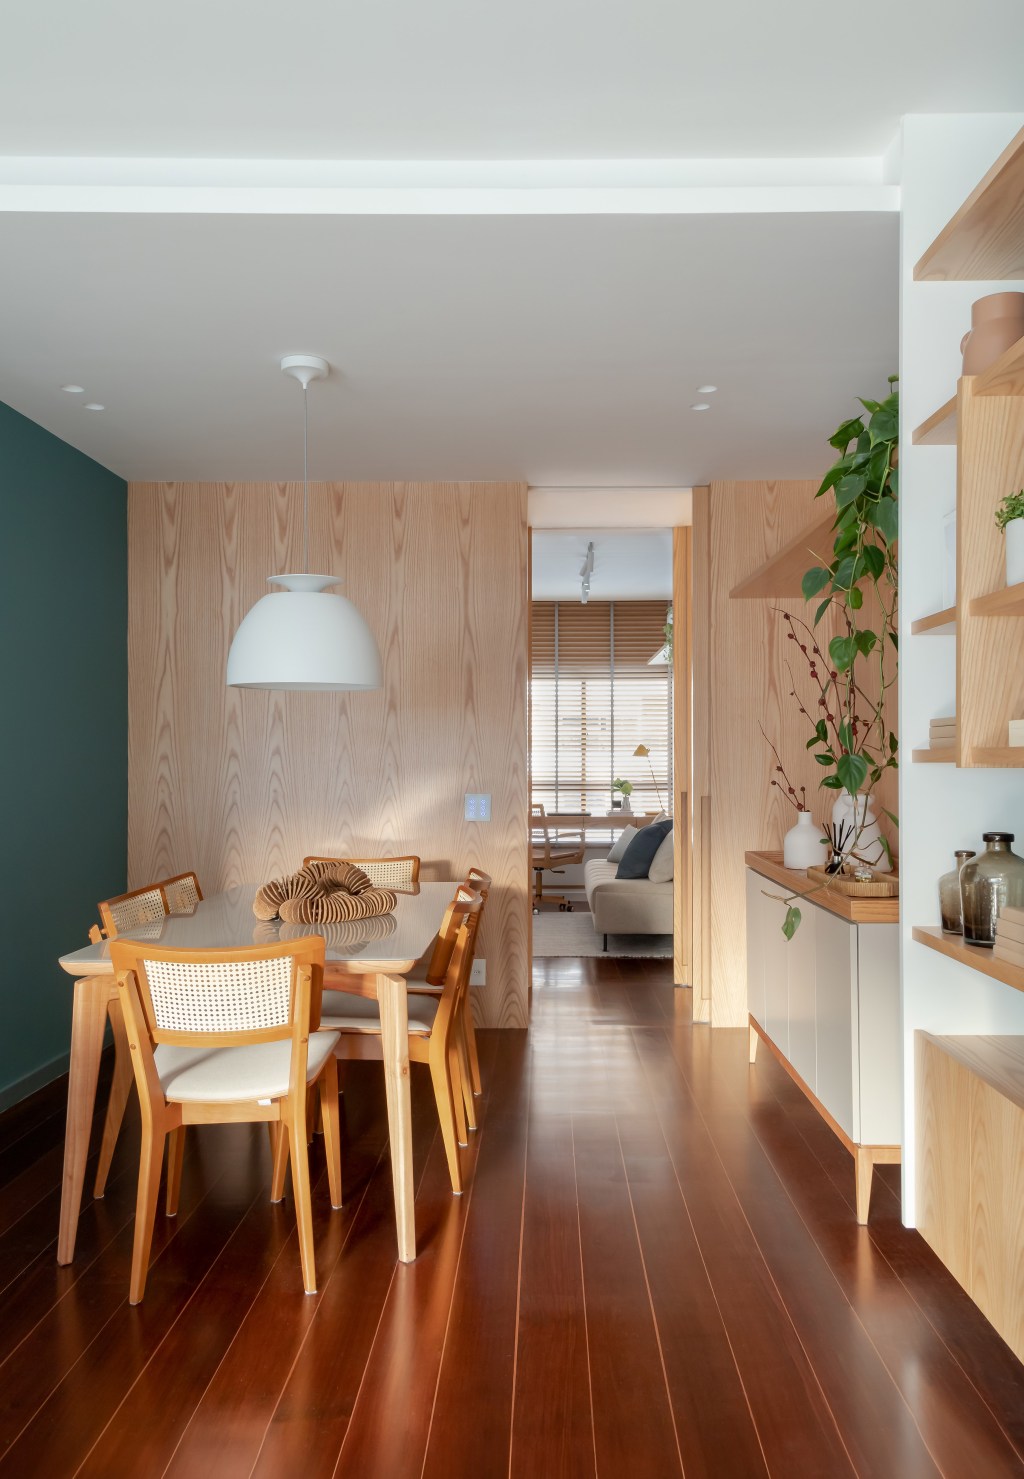 Apartamento de 140 m² ganha charme com paredes azuis e verdes. Projeto de Maia Romeiro Arquitetura. Na foto, sala de jantar com parede verde e piso de madeira.